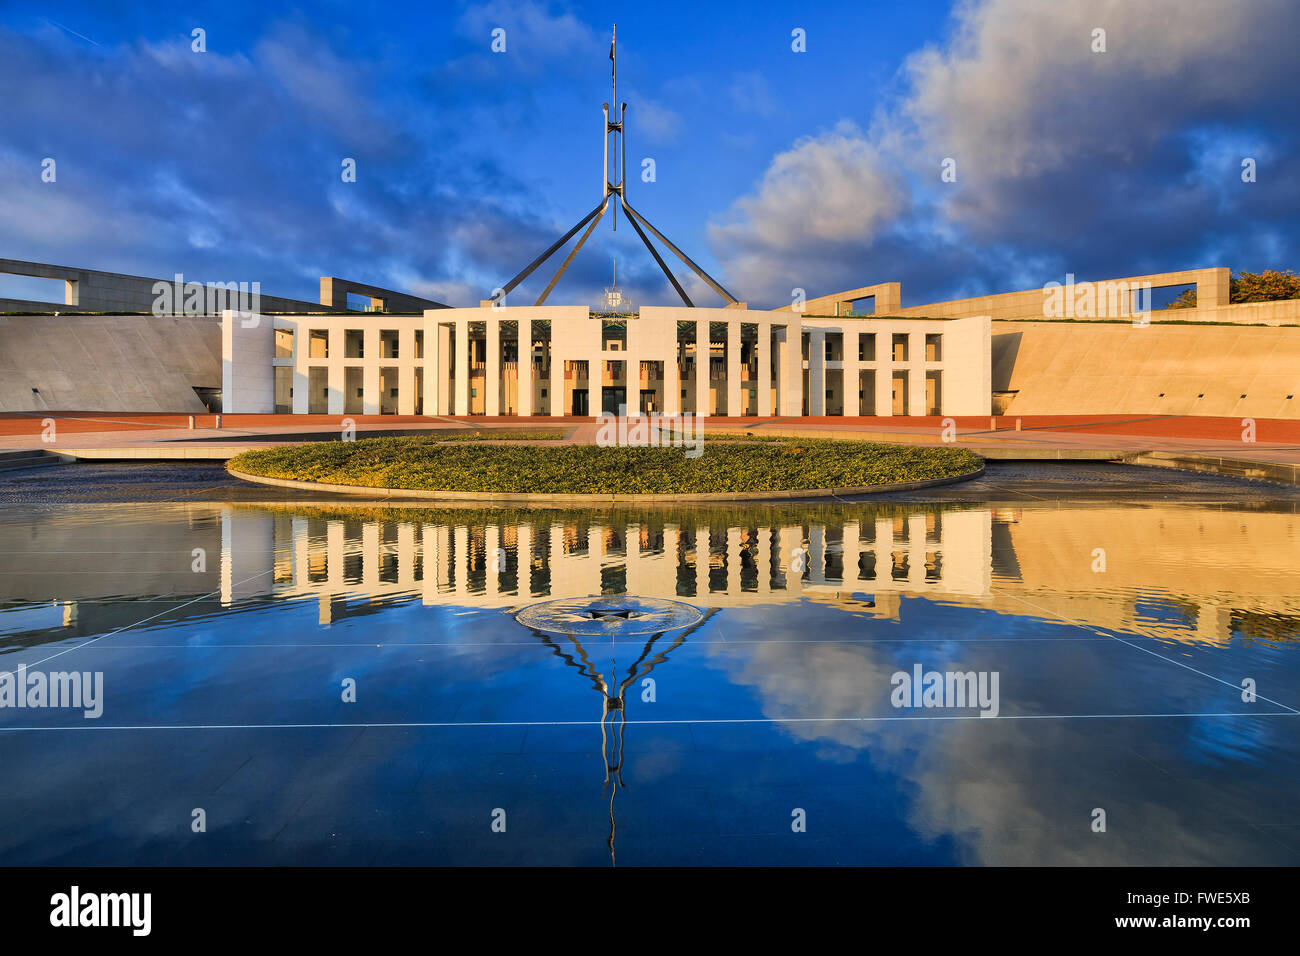 Façade du nouveau parlement de l'Australie à Canberra avec pavillon élevé sur un mât avec reflet dans l'eau hi capitol de stil Banque D'Images